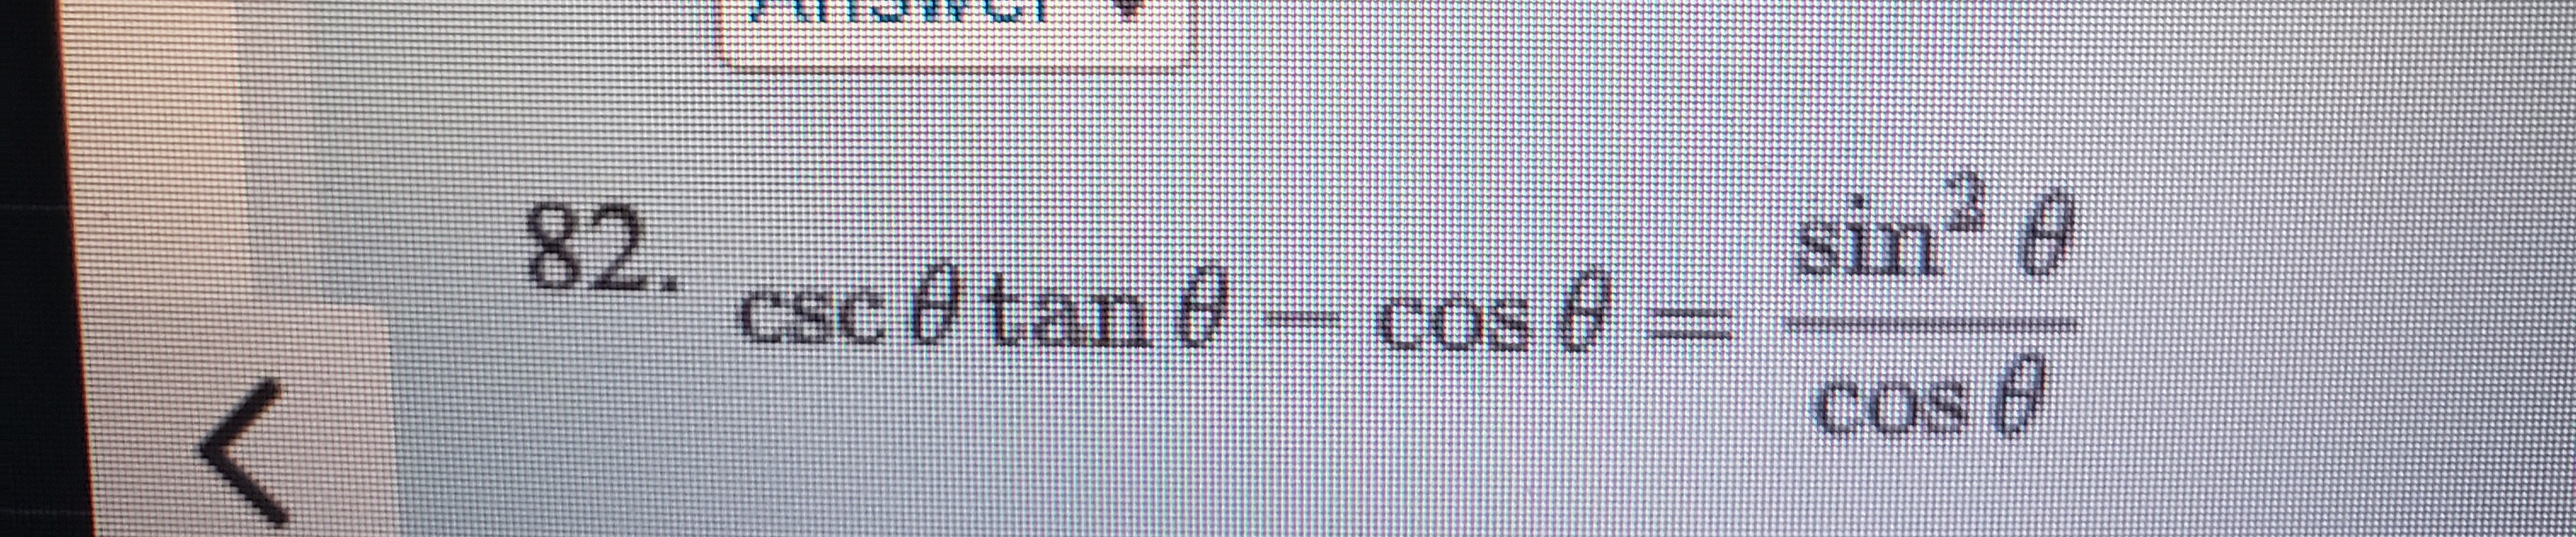 csc 0tan e
sin 6
cos 8 =
cosd
